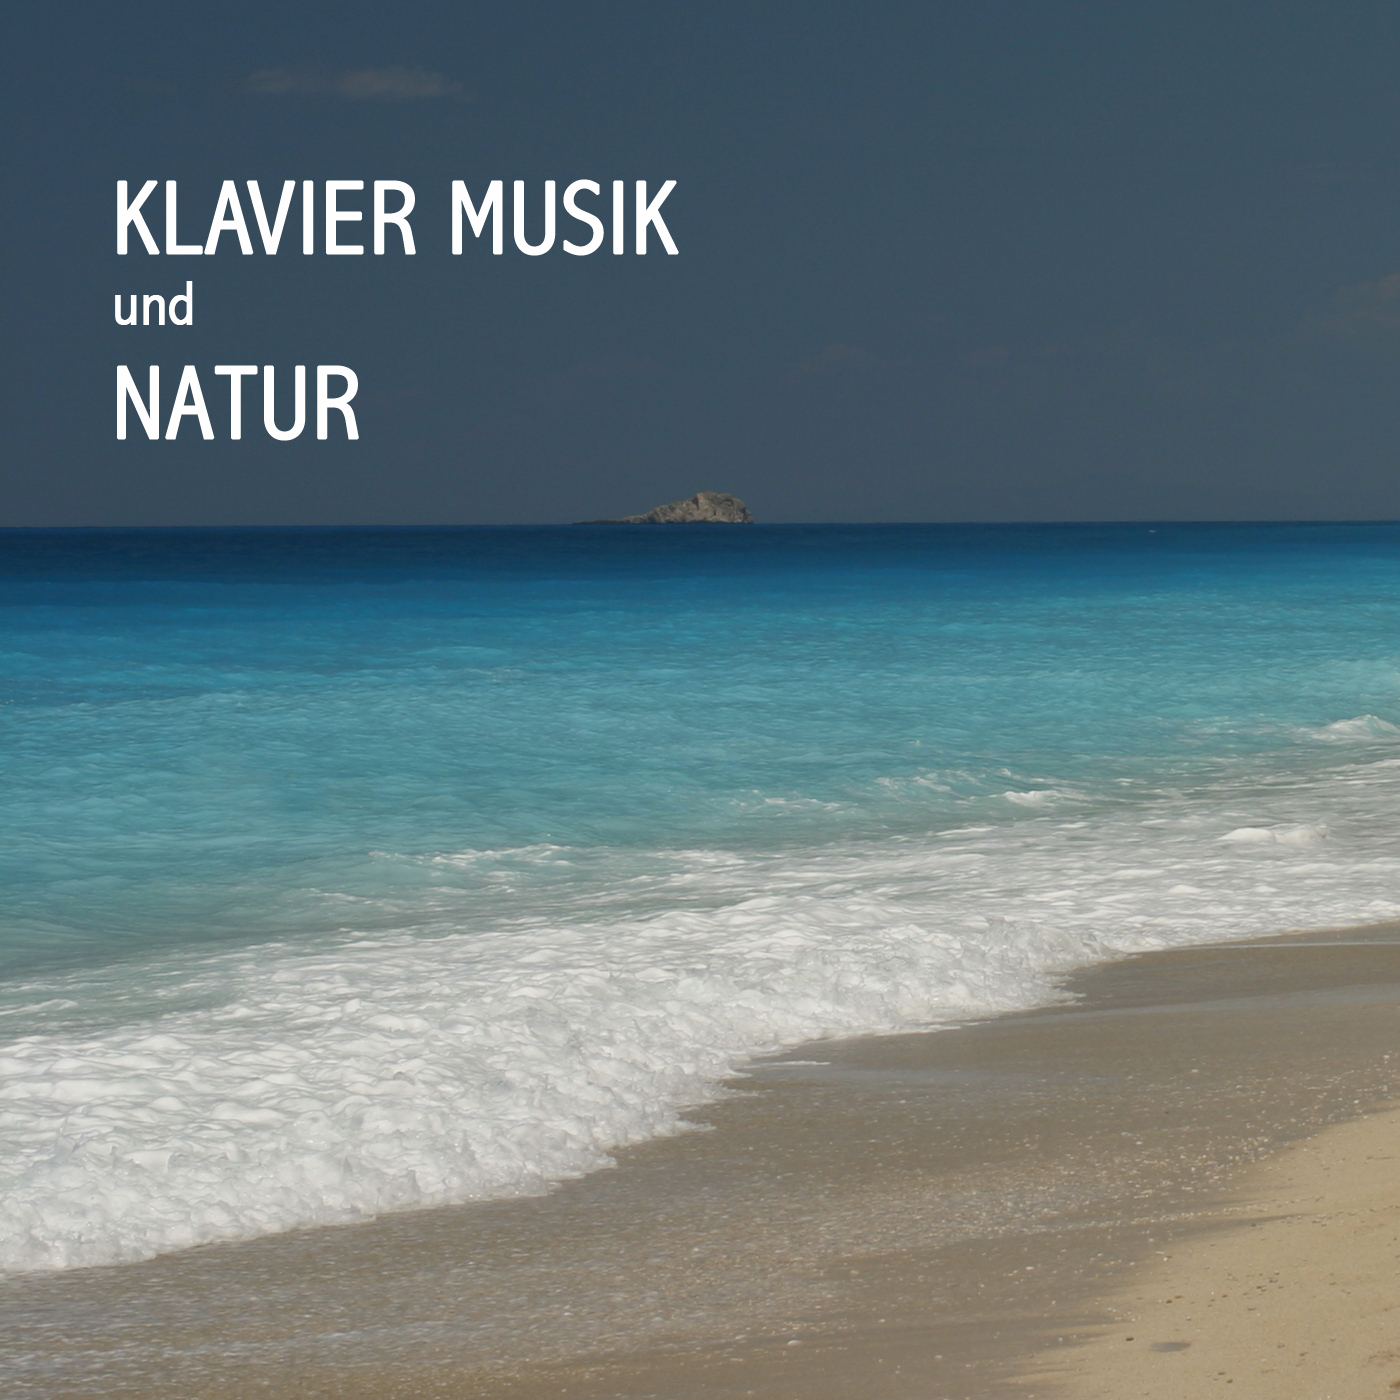 All That I Am - Piano Musik und Natur Meeresrauschen